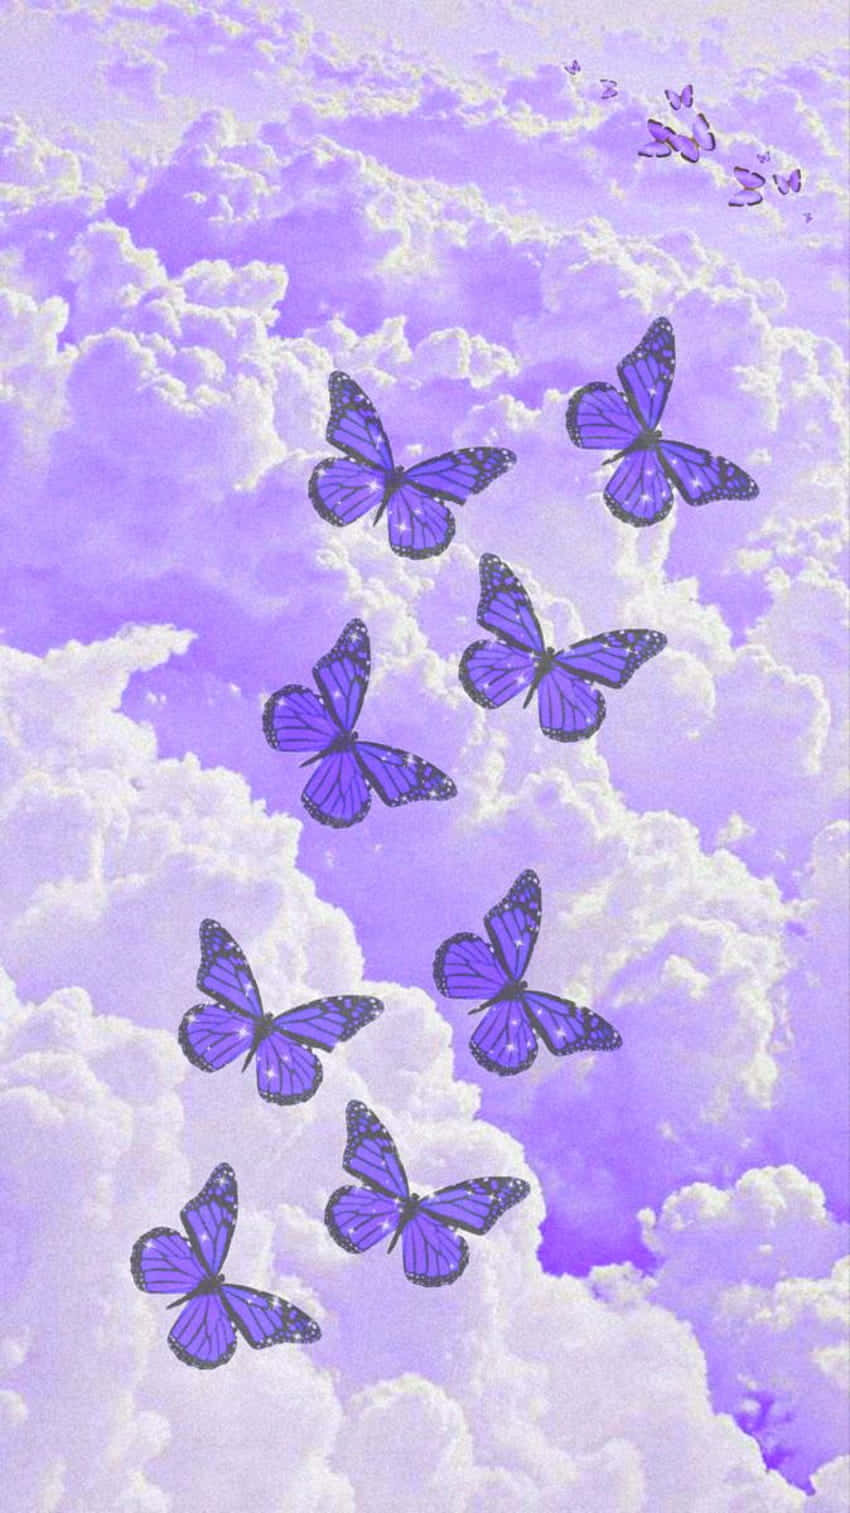 Et smukt glitter sommerfugl skinner i sollyset. Wallpaper